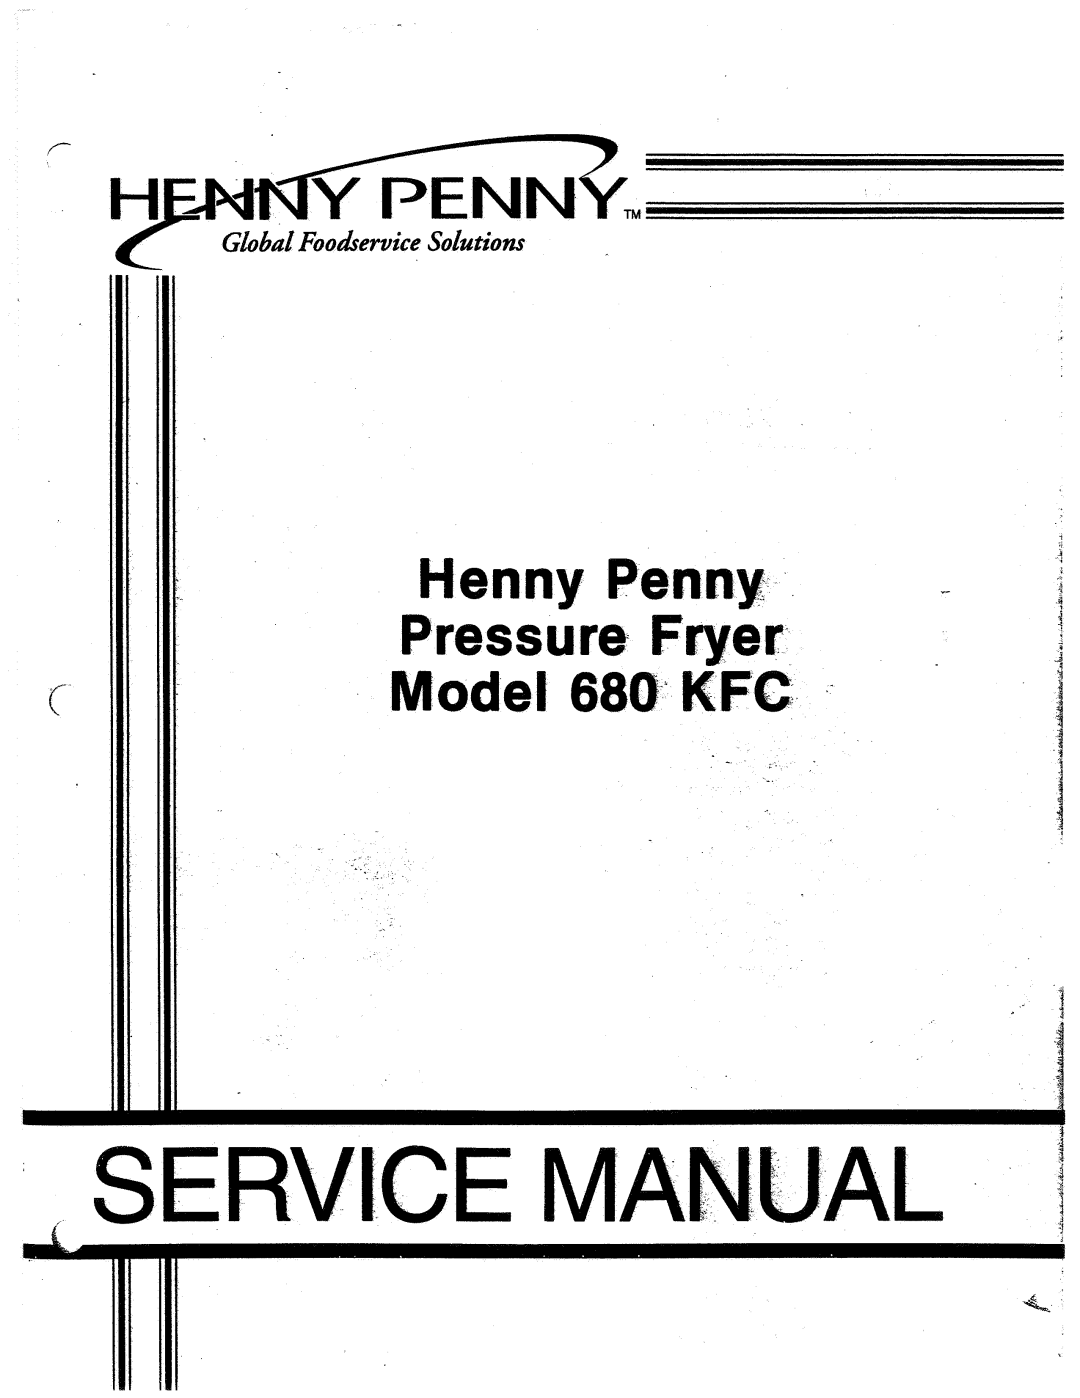 Henny Penny 680 KFC manual 